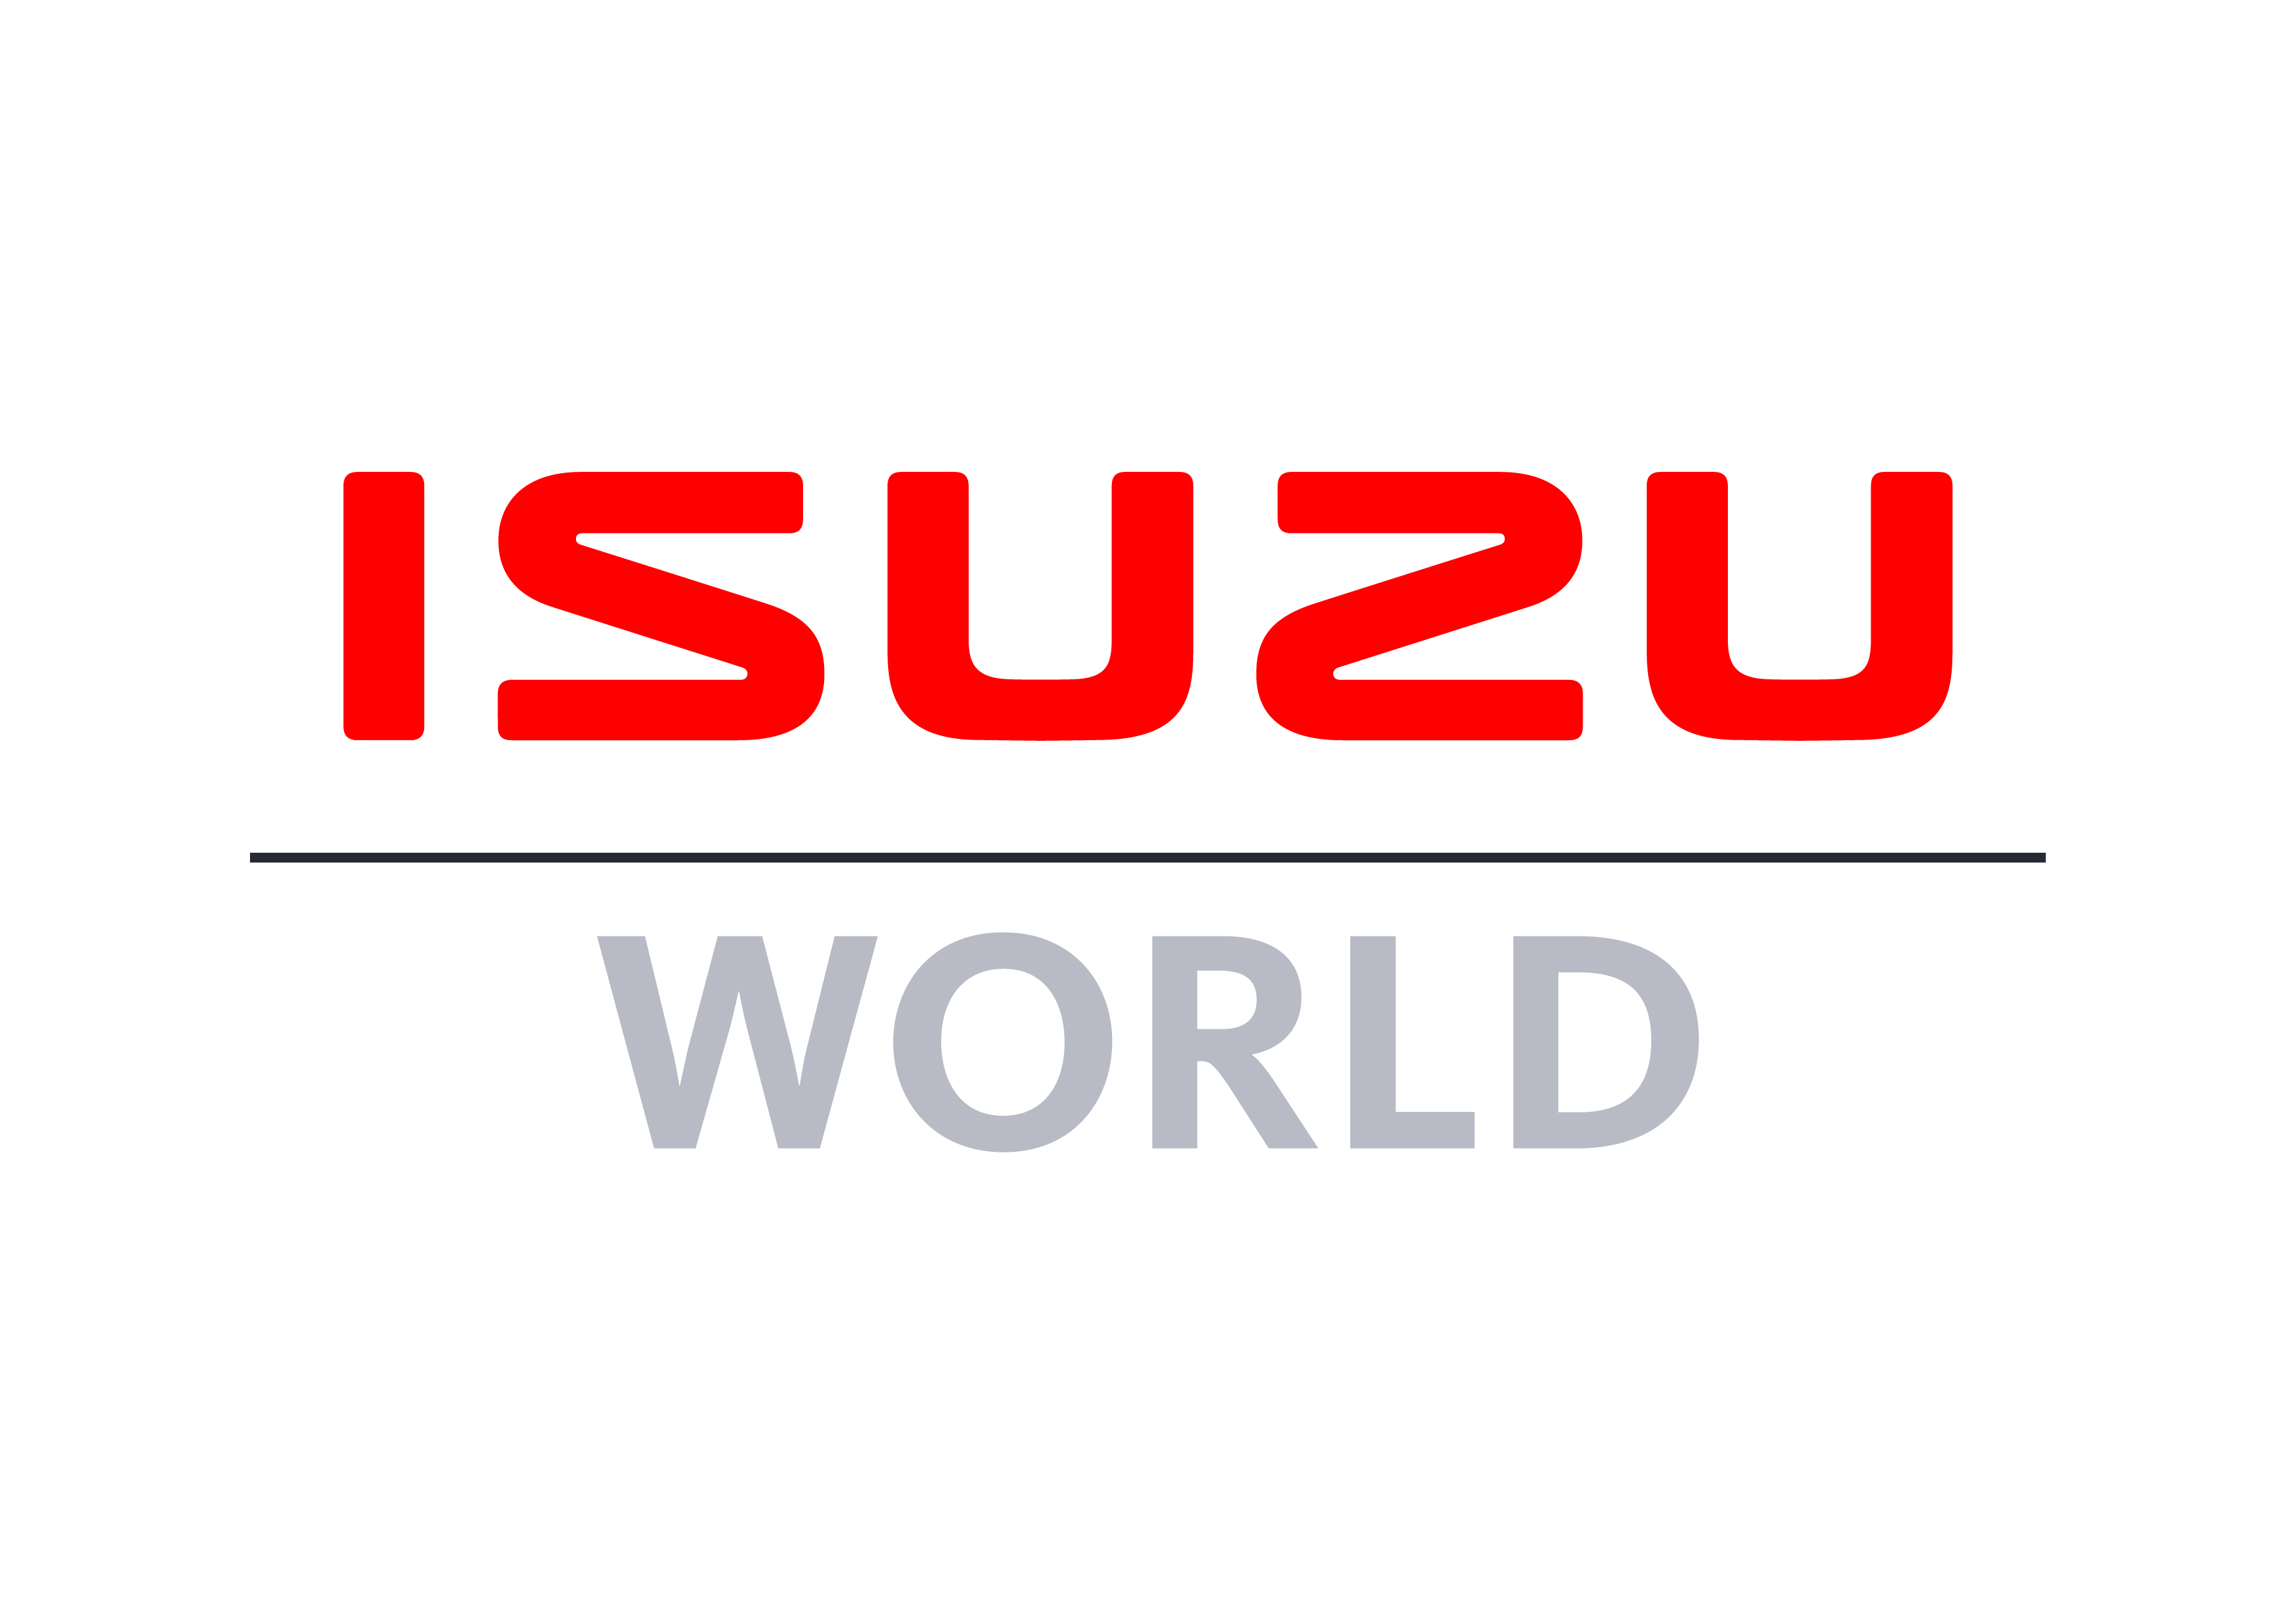 Isuzu World